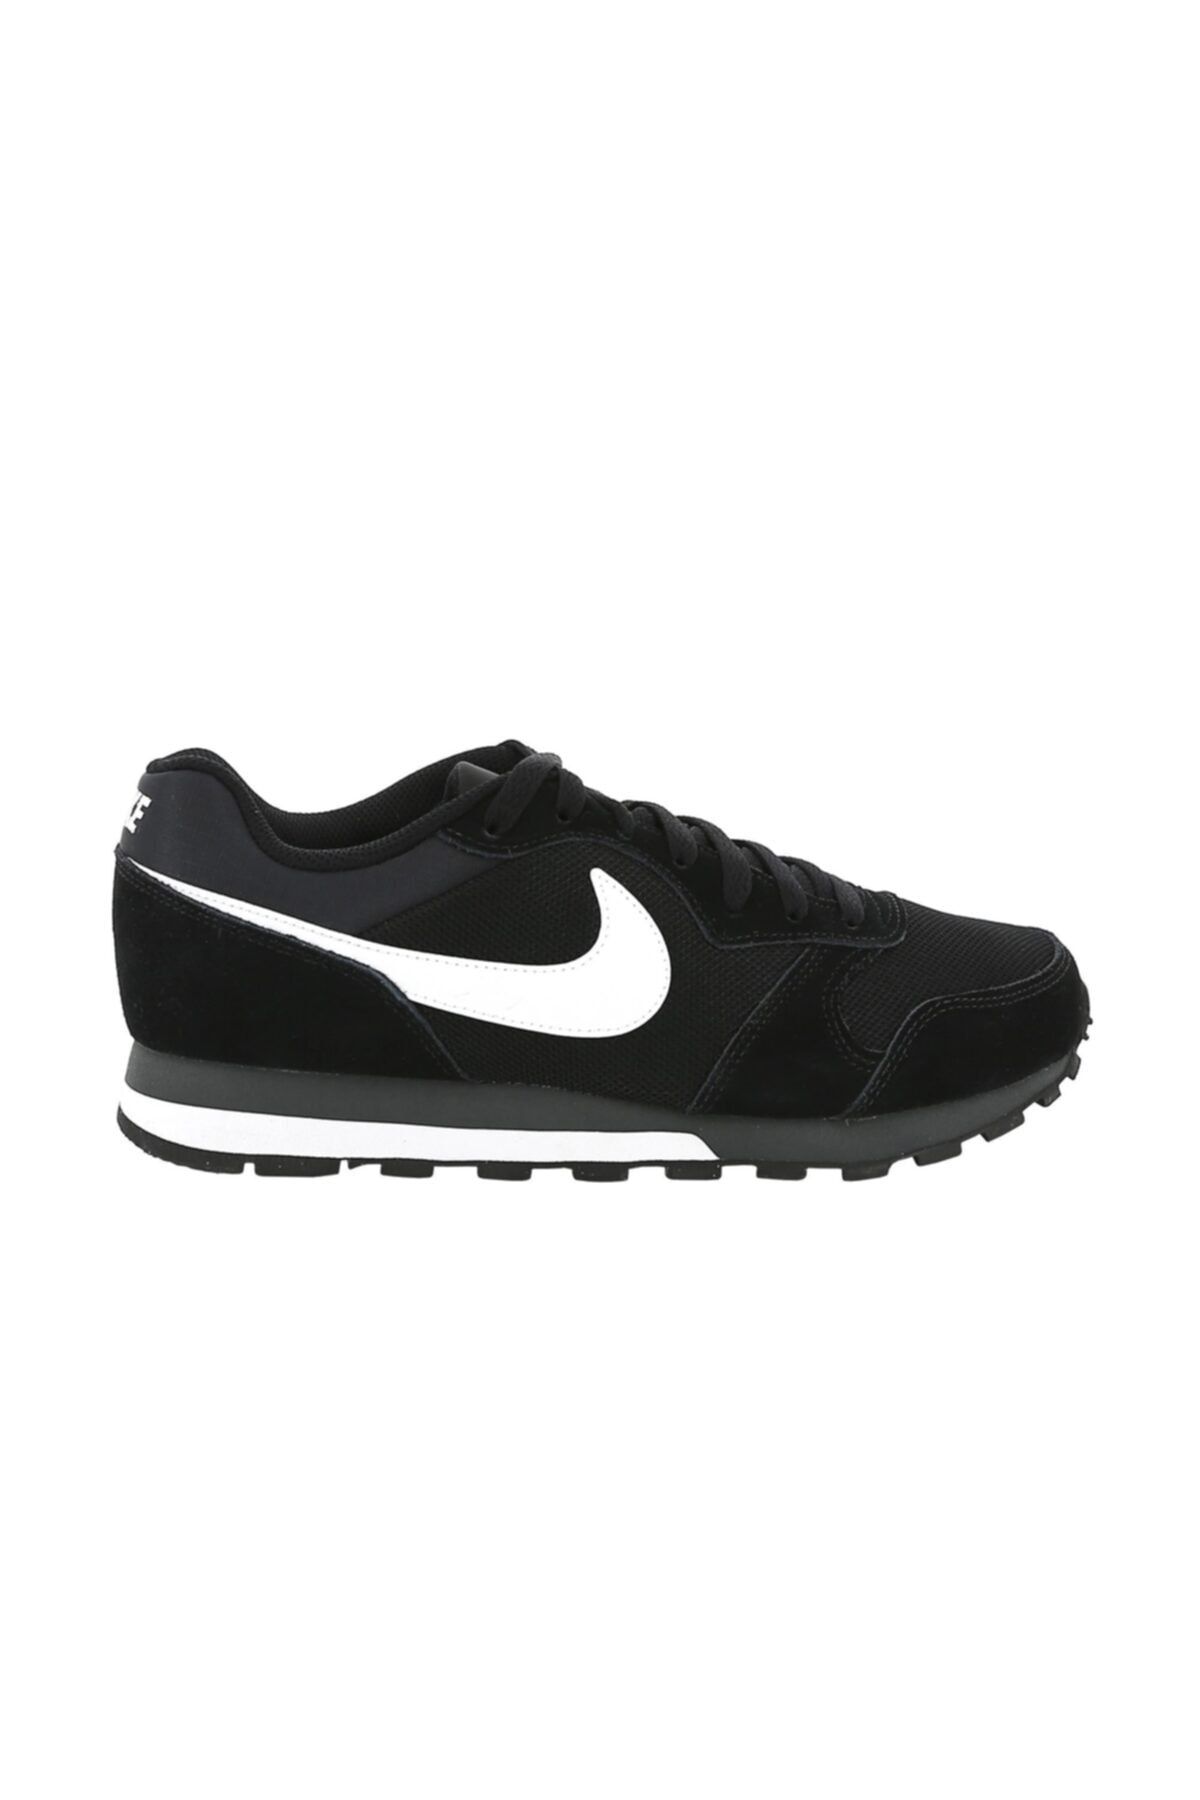 Nike Md Runner 2 Erkek Siyah Günlük Ayakkabı 749794-010